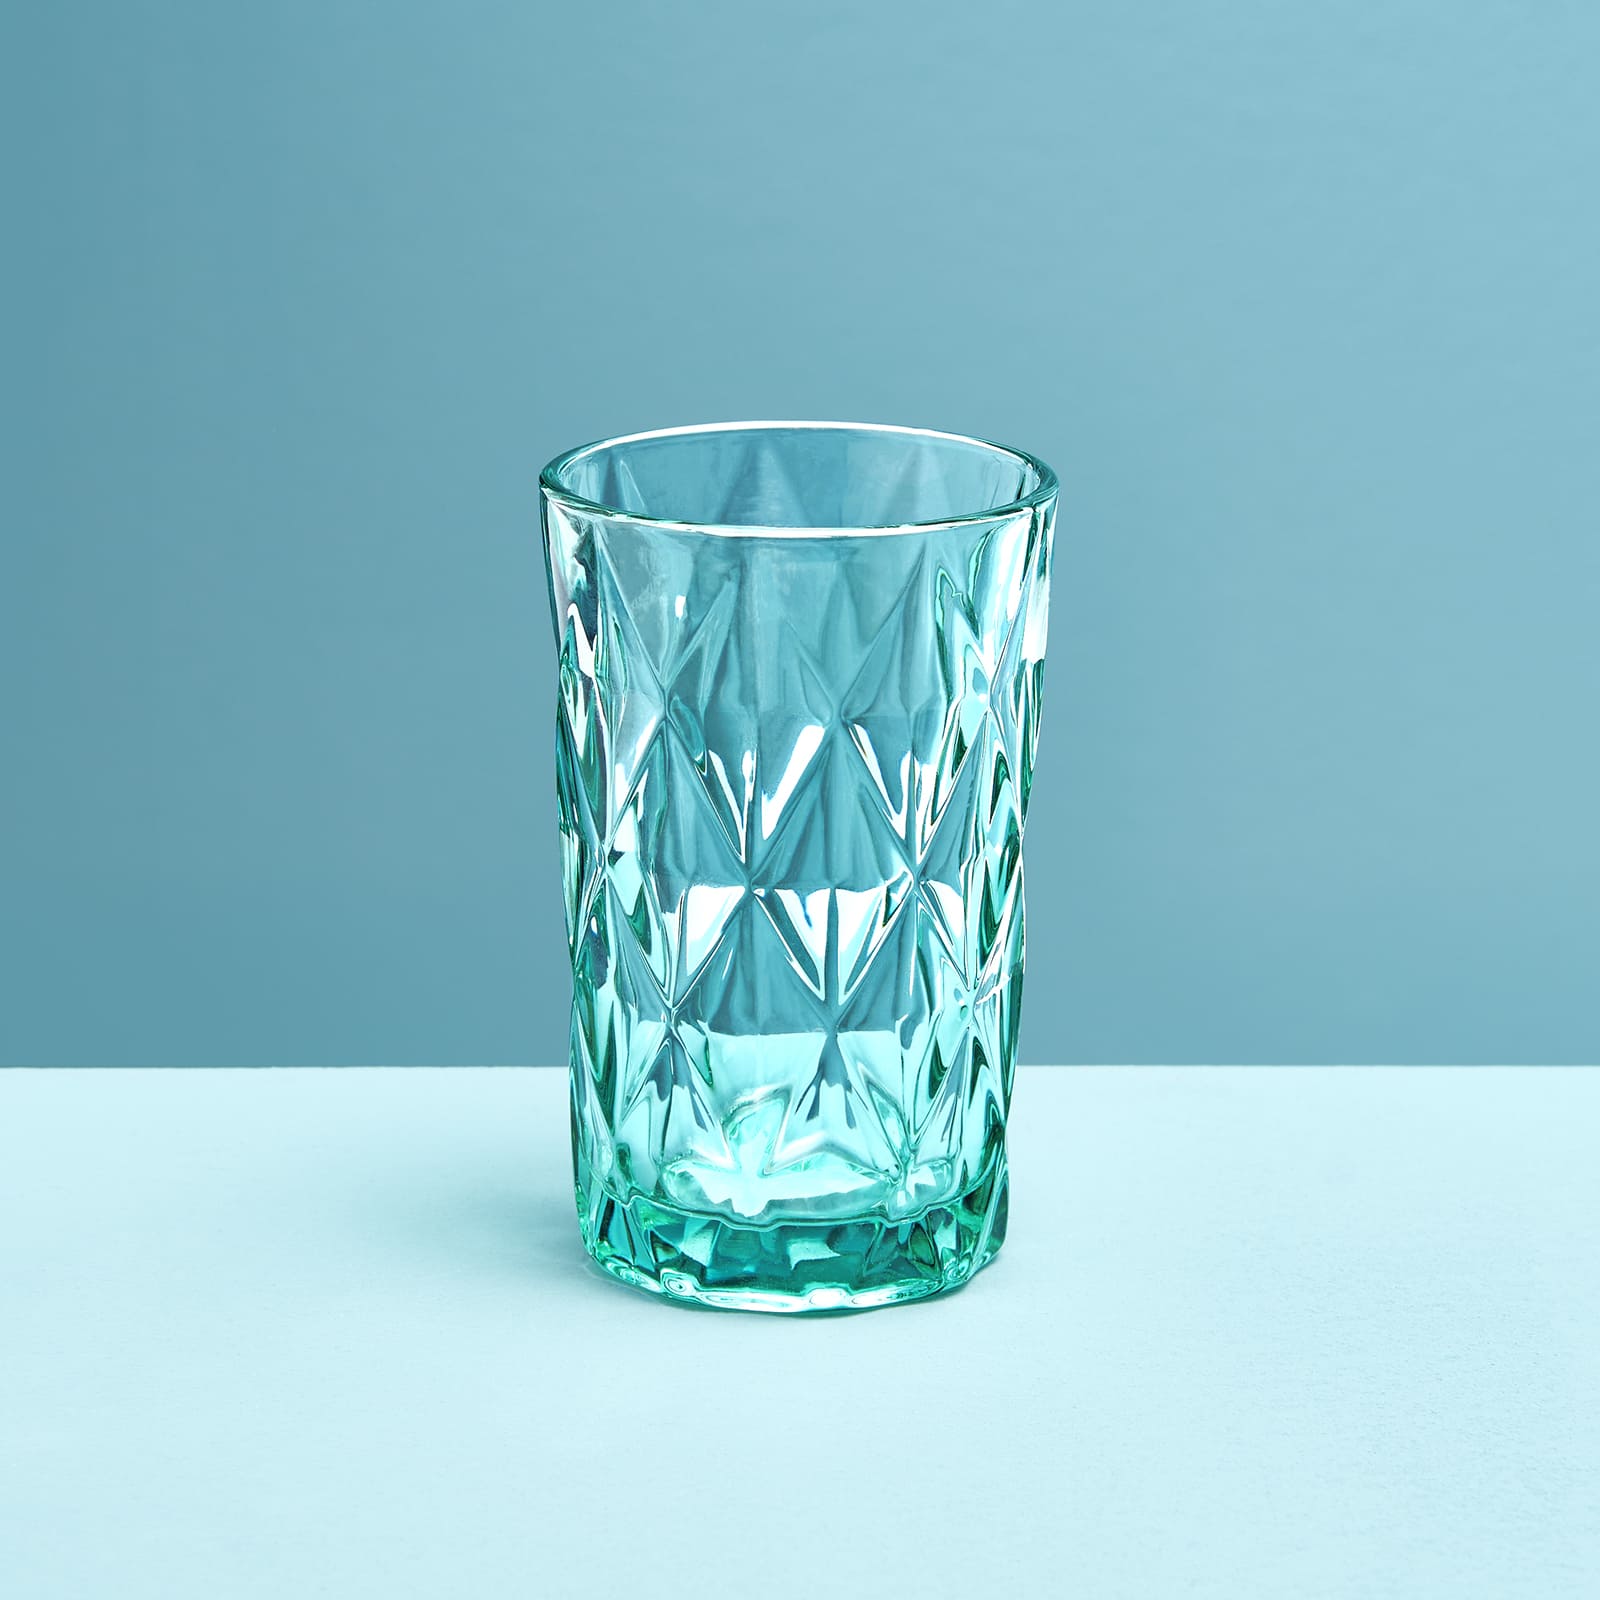 4er-Set Longdrinkglas, türkis,Glas, 8x13 cm